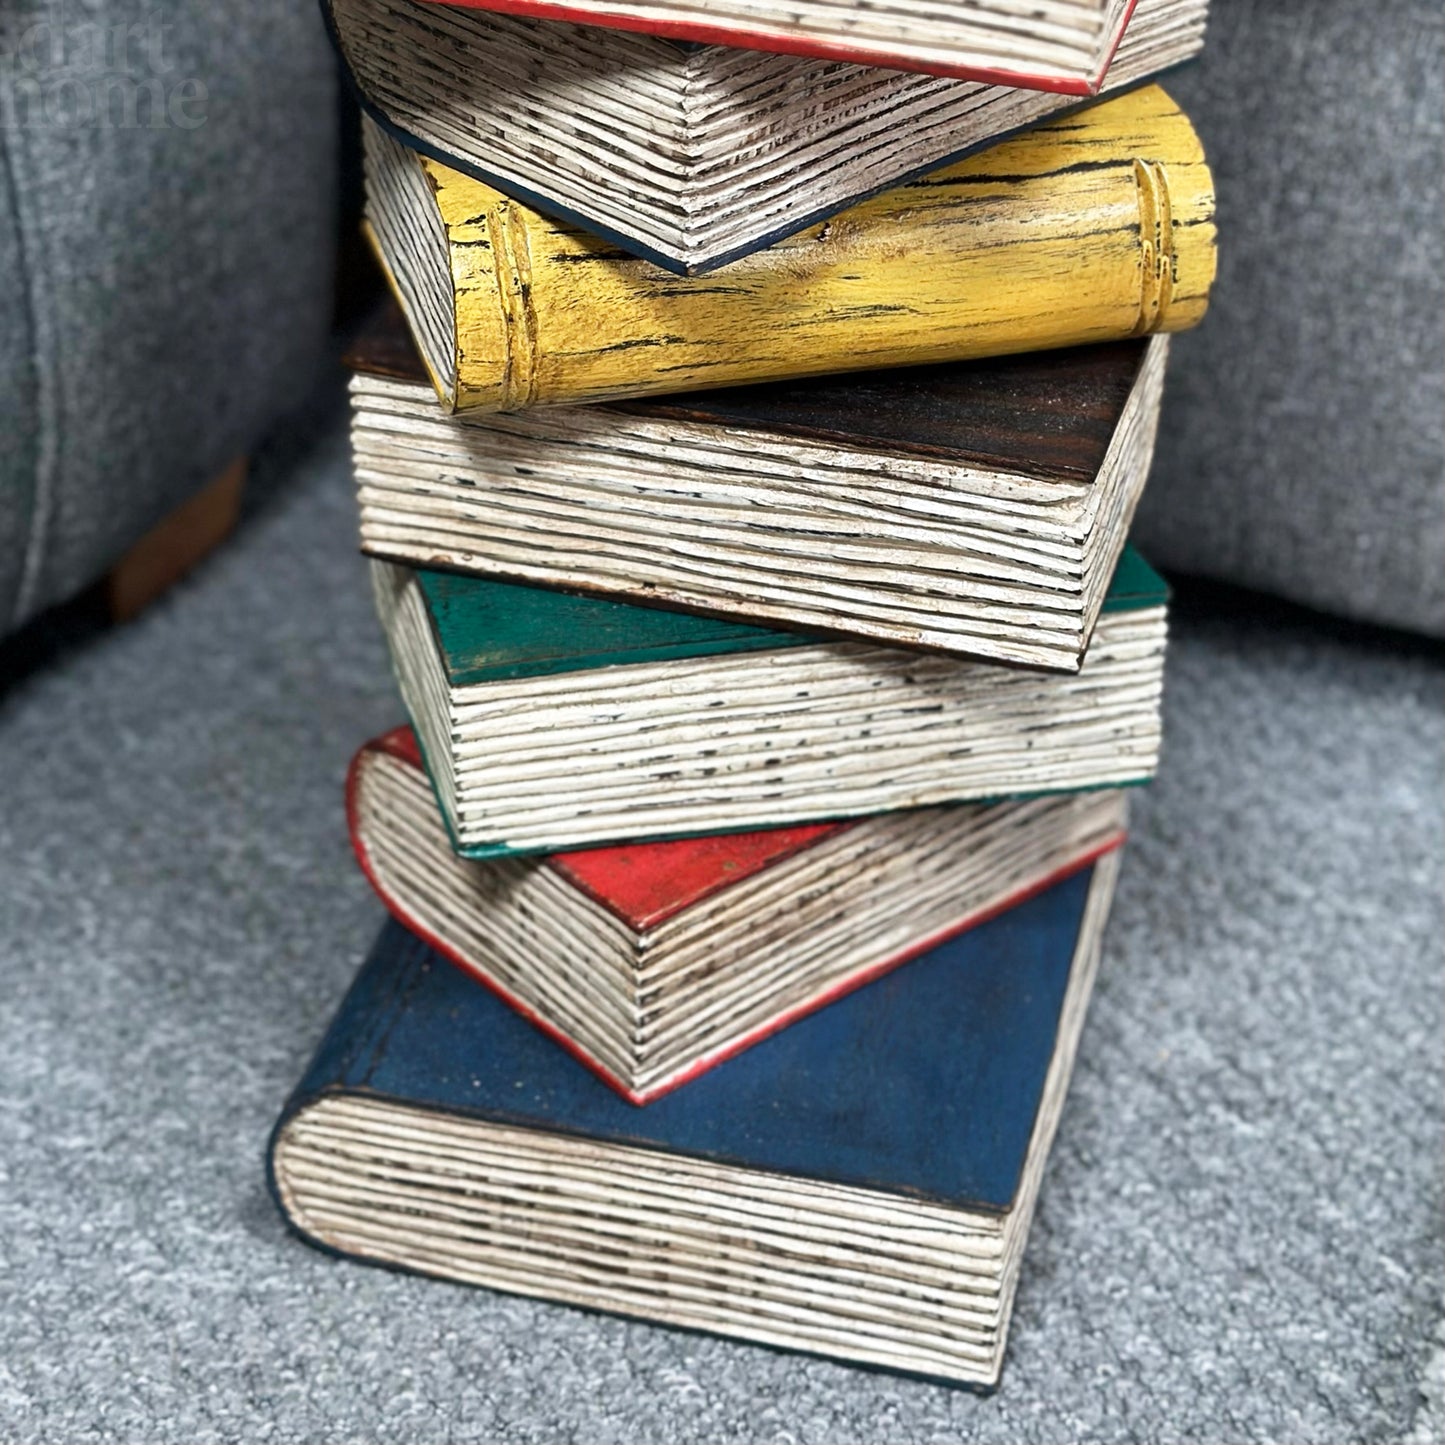 Bunter Bücherstapeltisch aus massivem Holz